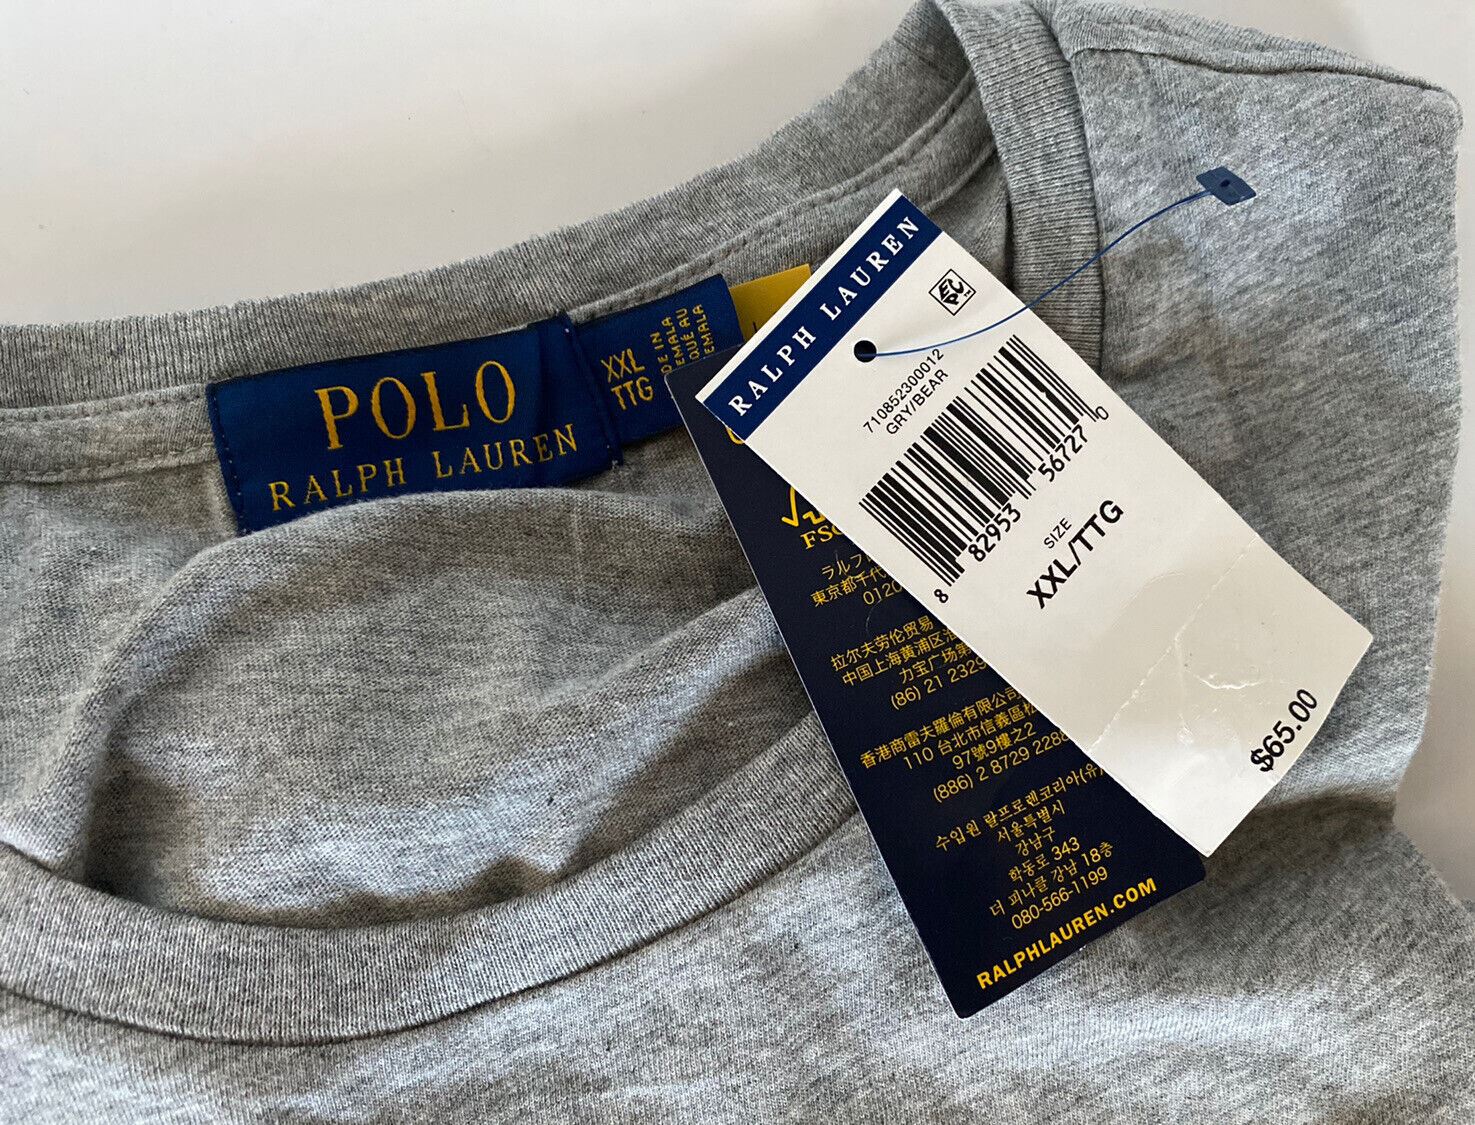 NWT $65 Polo Ralph Lauren Bear T-Shirt Gray 2XL